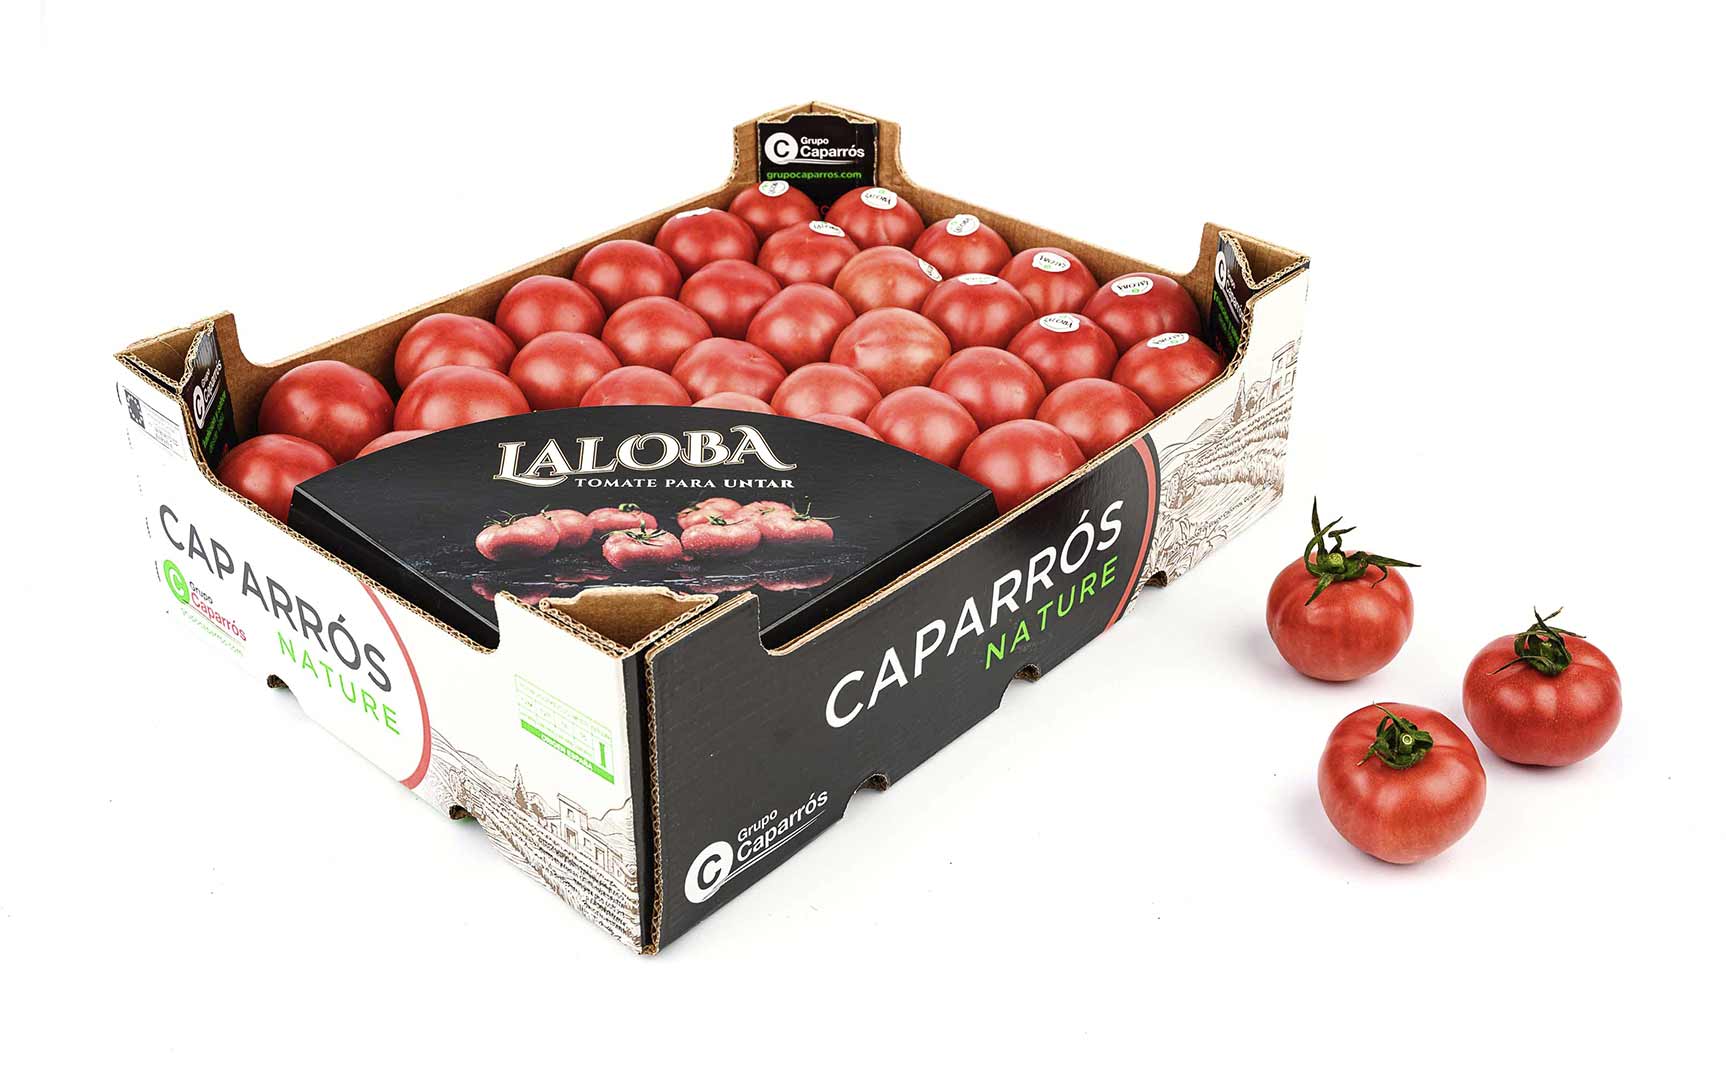 Laloba tomato - Caparrós